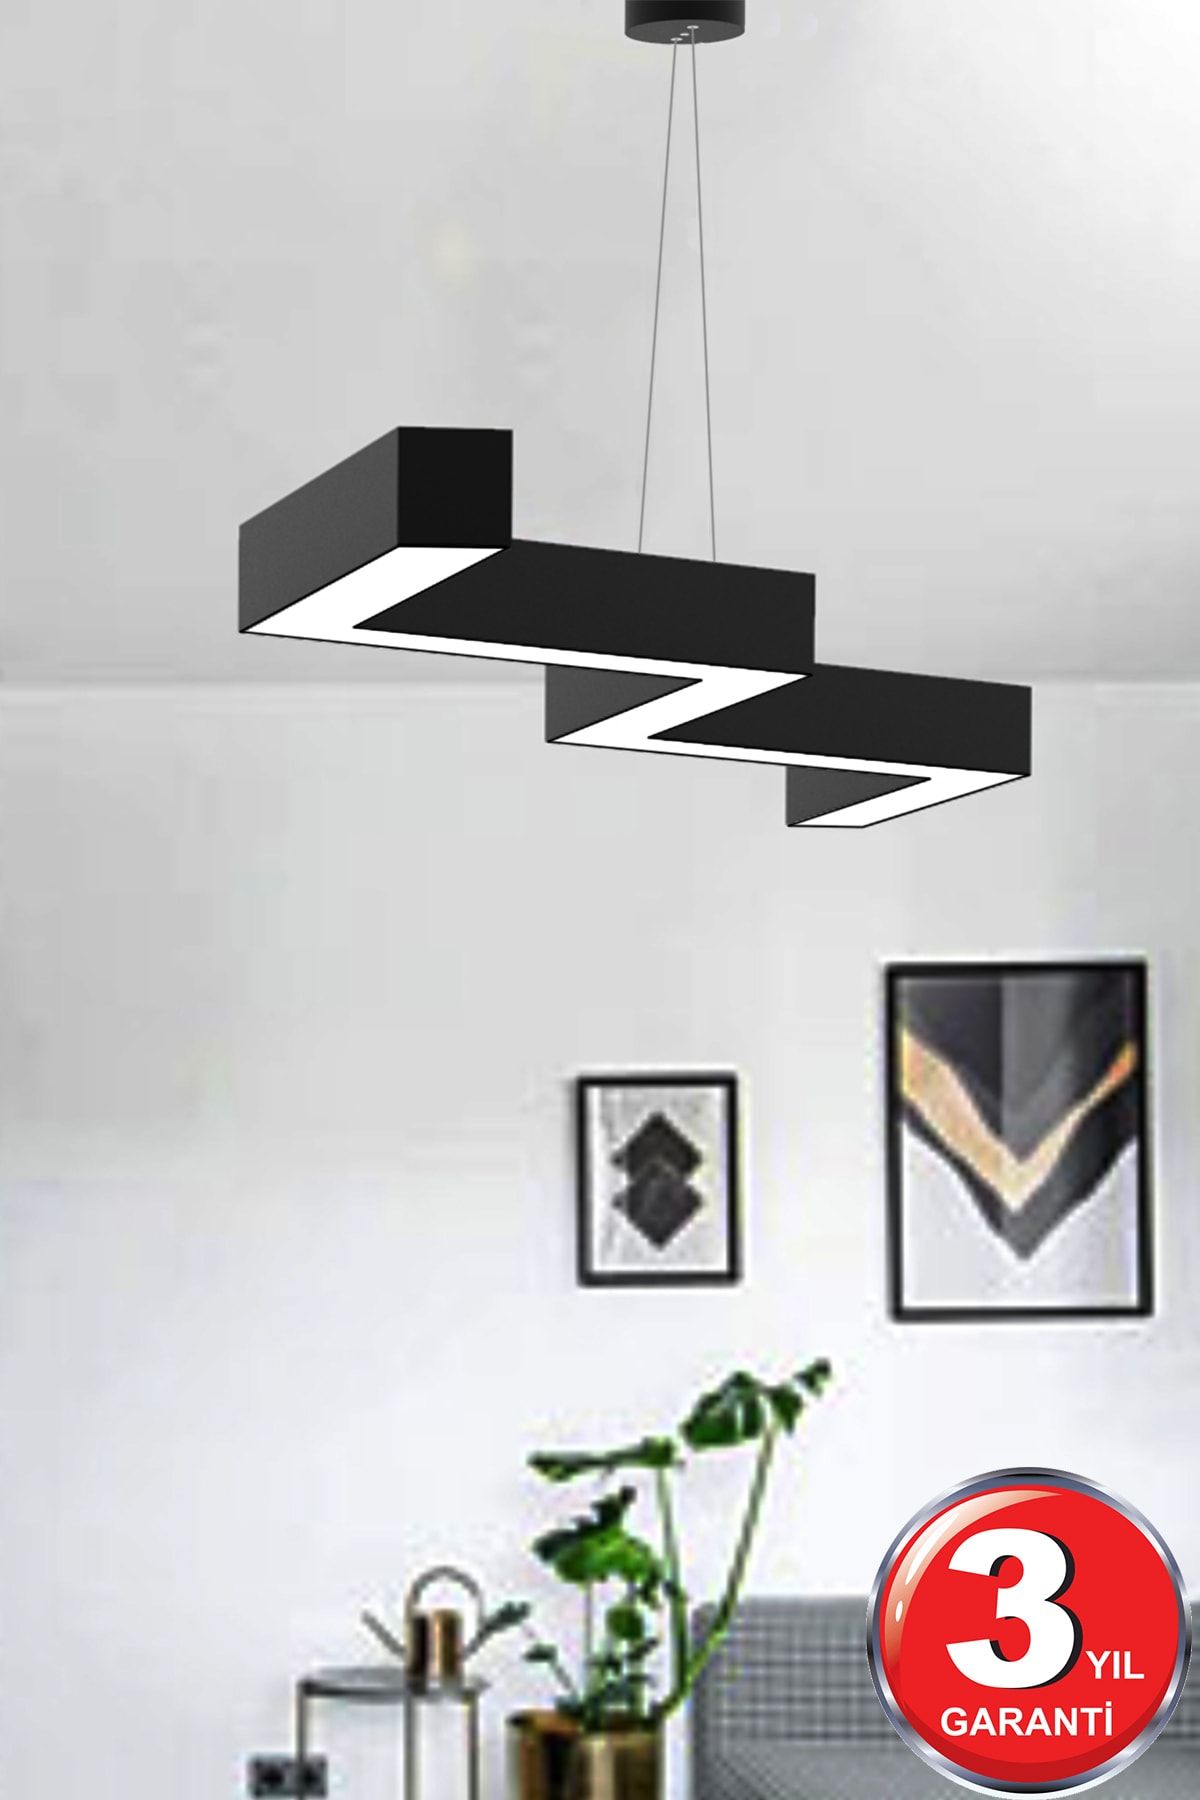 Hegza Lighting Zigzag ( Siyah Kasa, Sarı Işık ) Ledli Modern Led Avize, Salon, Mutfak, Oturma Yatak Odası, Sarkıt